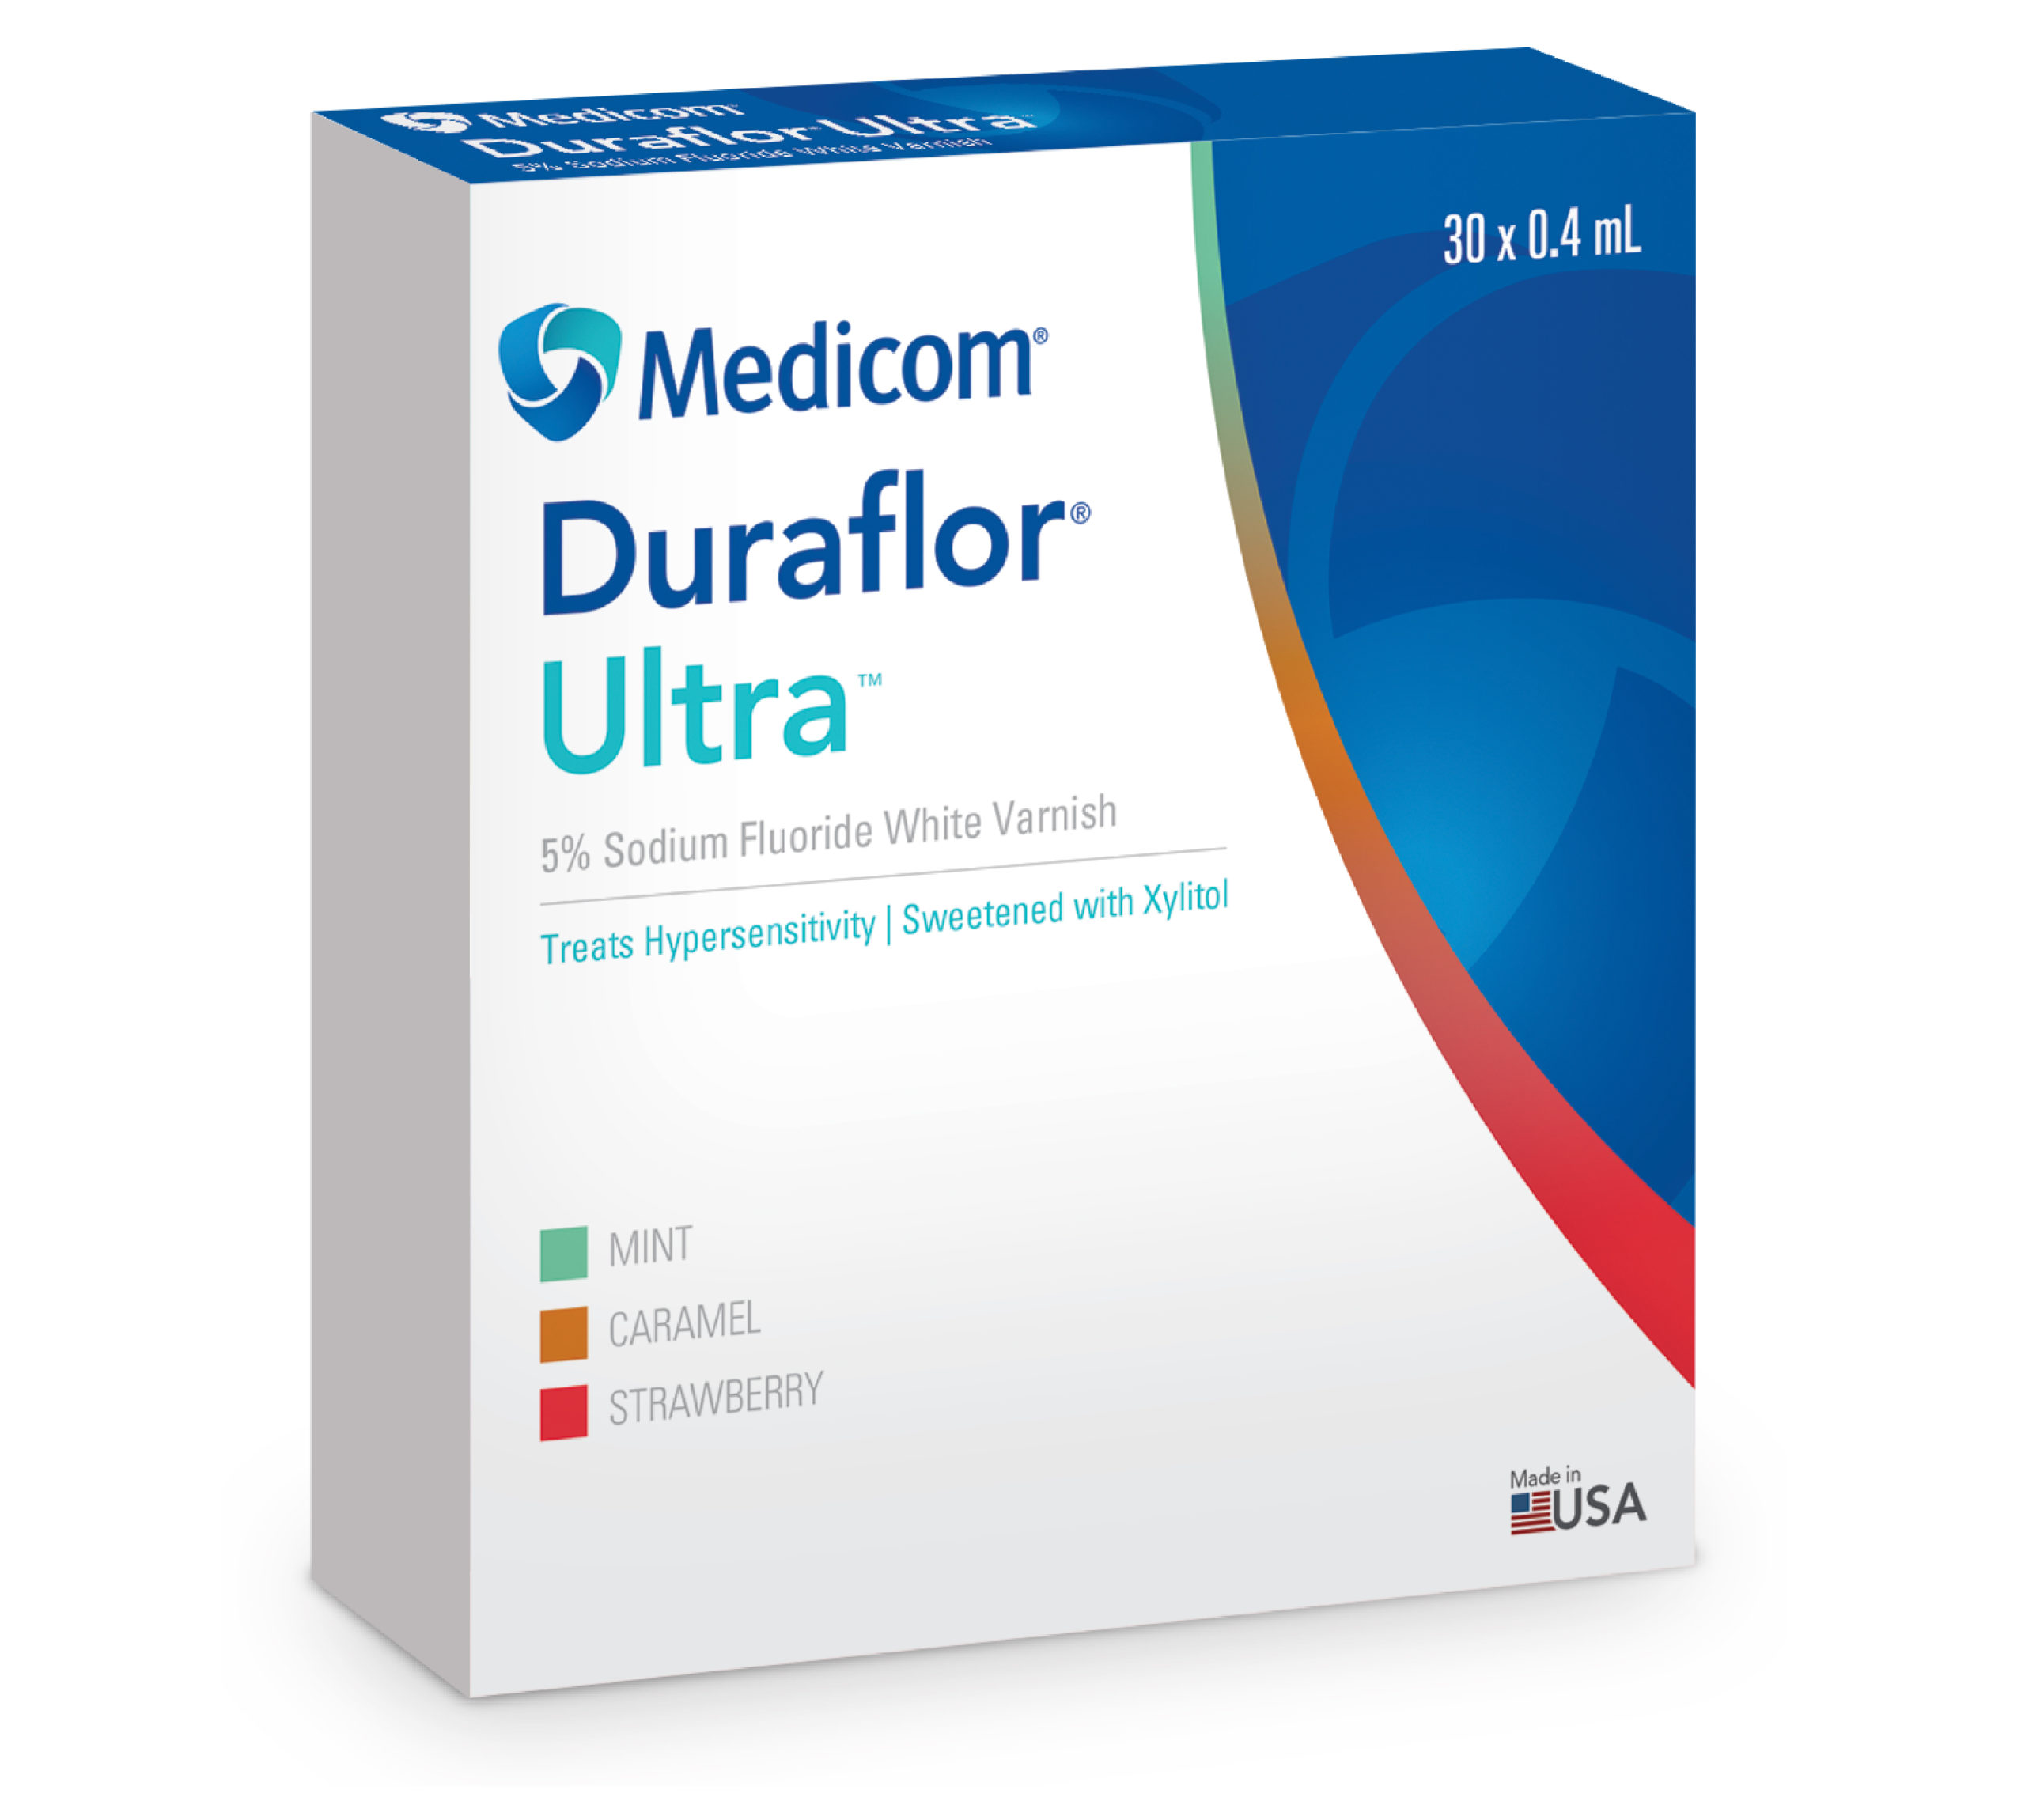 Medicom Duraflor Fluoride Varnish